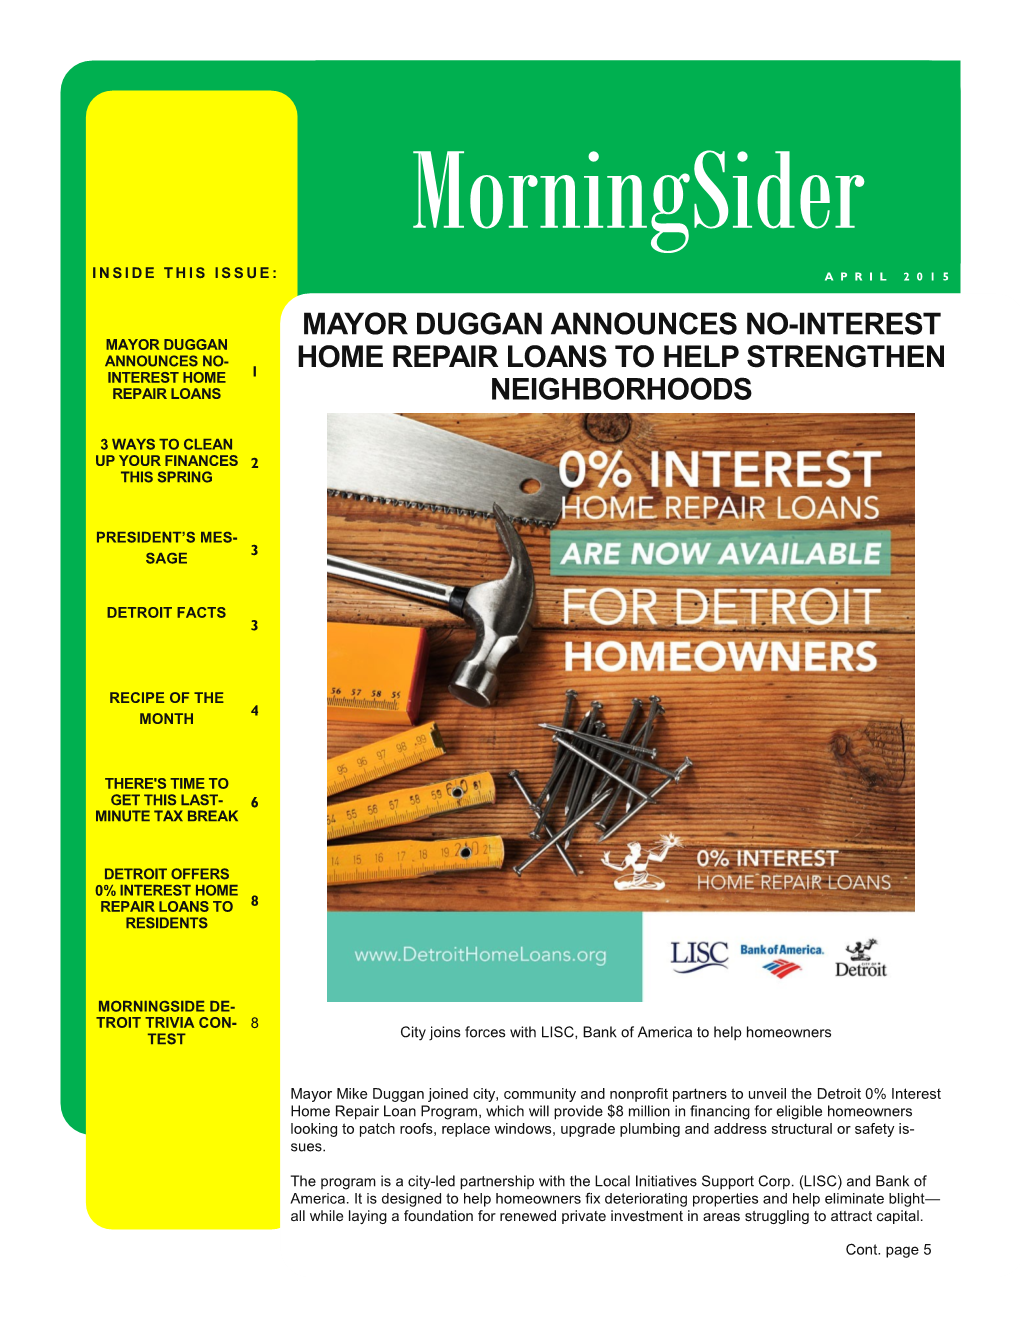 Mayor Duggan Announces No-Interest Home Repair Loans to Help Strengthen Neighborhoods